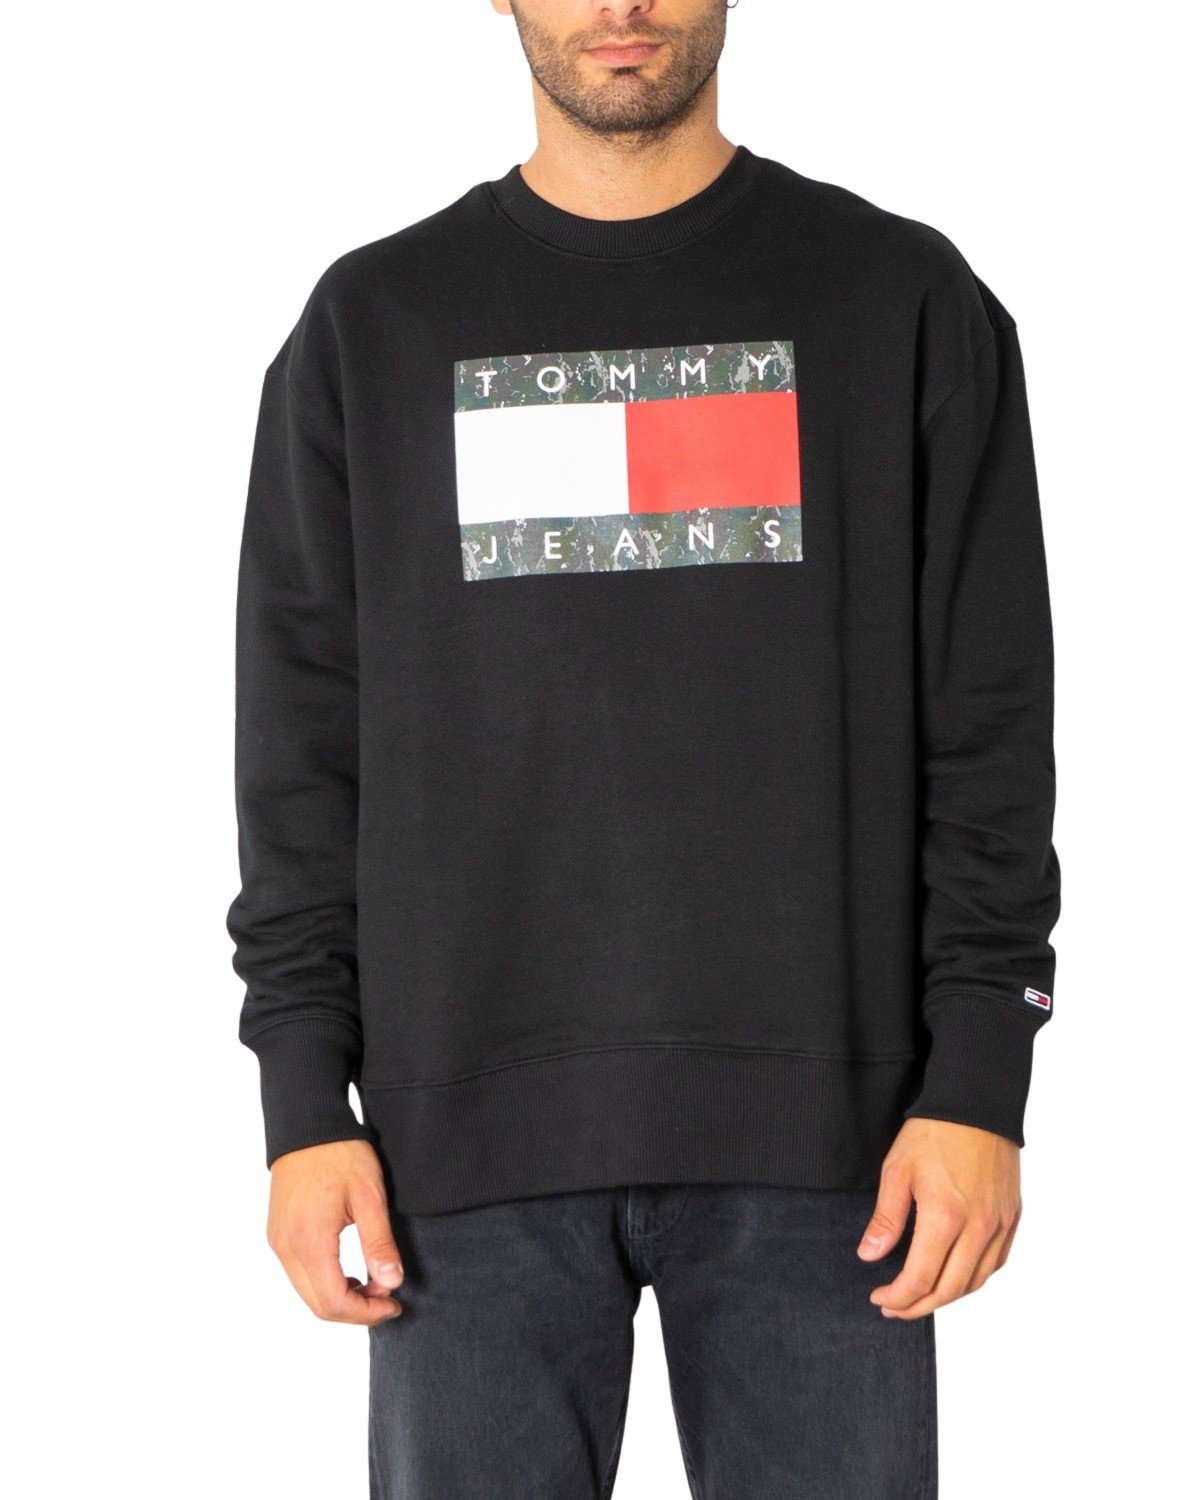 Tommy Hilfiger Jeans Men's Sweatshirt Various Colours 308082 - black XS